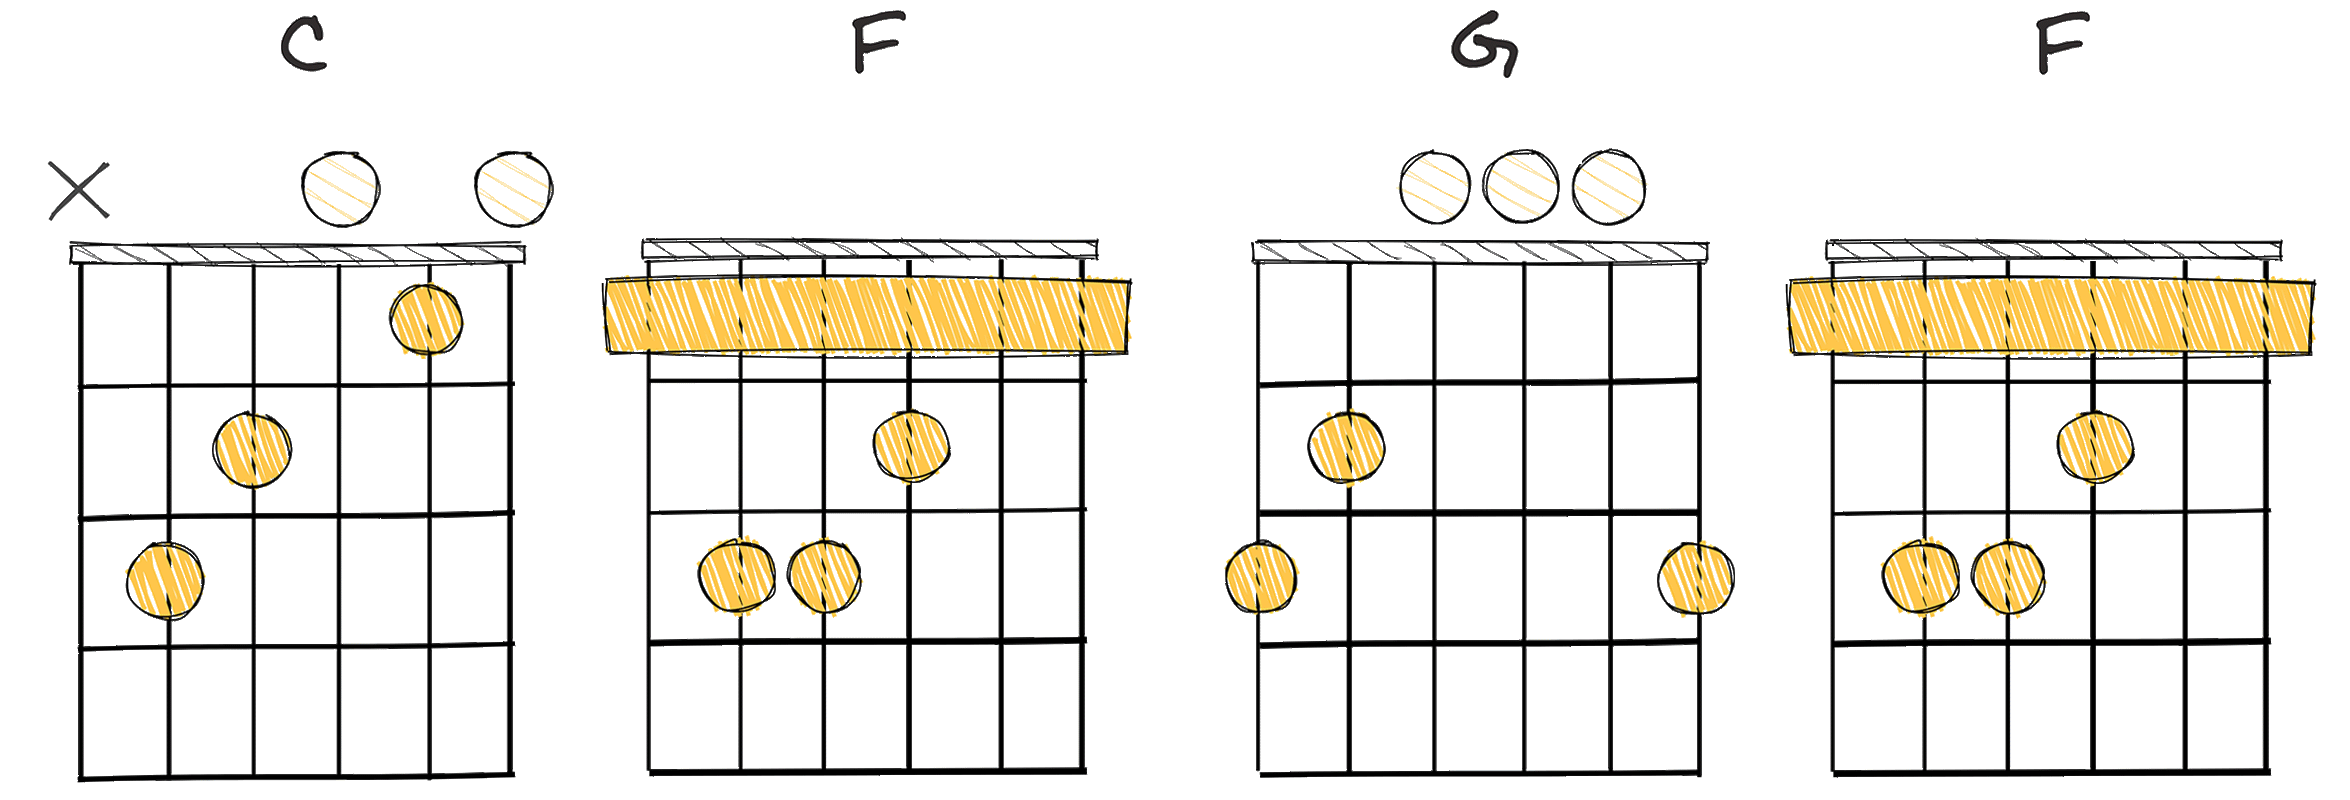 I-IV-V-IV (1-4-5-4) chords diagram